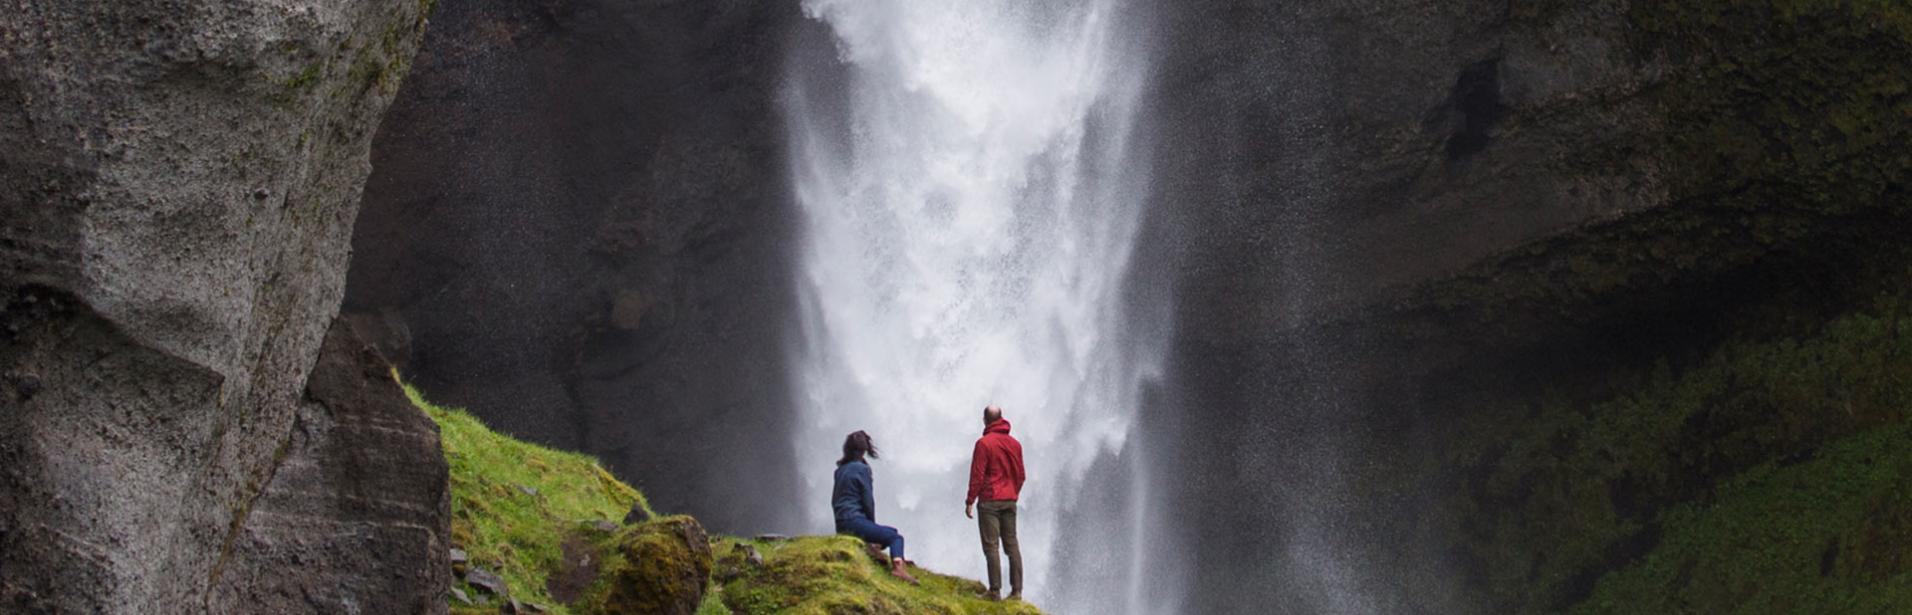 Par besöker vattenfall på södra Island.